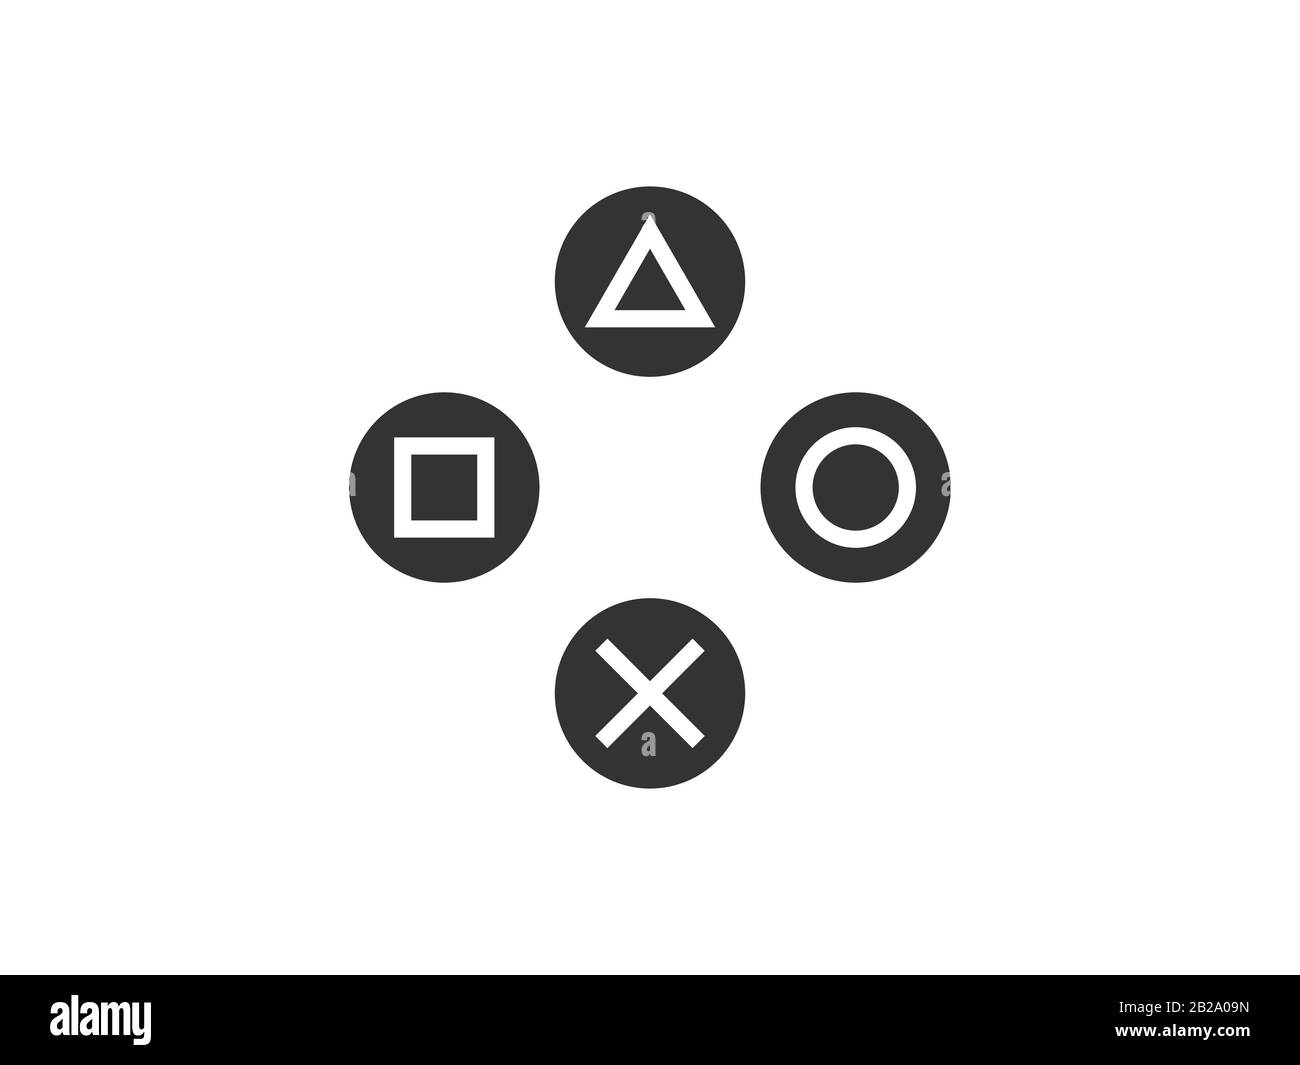 Symbol für die Gamepad-Steuerungstasten. Vektorgrafiken, flaches Design. Stock Vektor